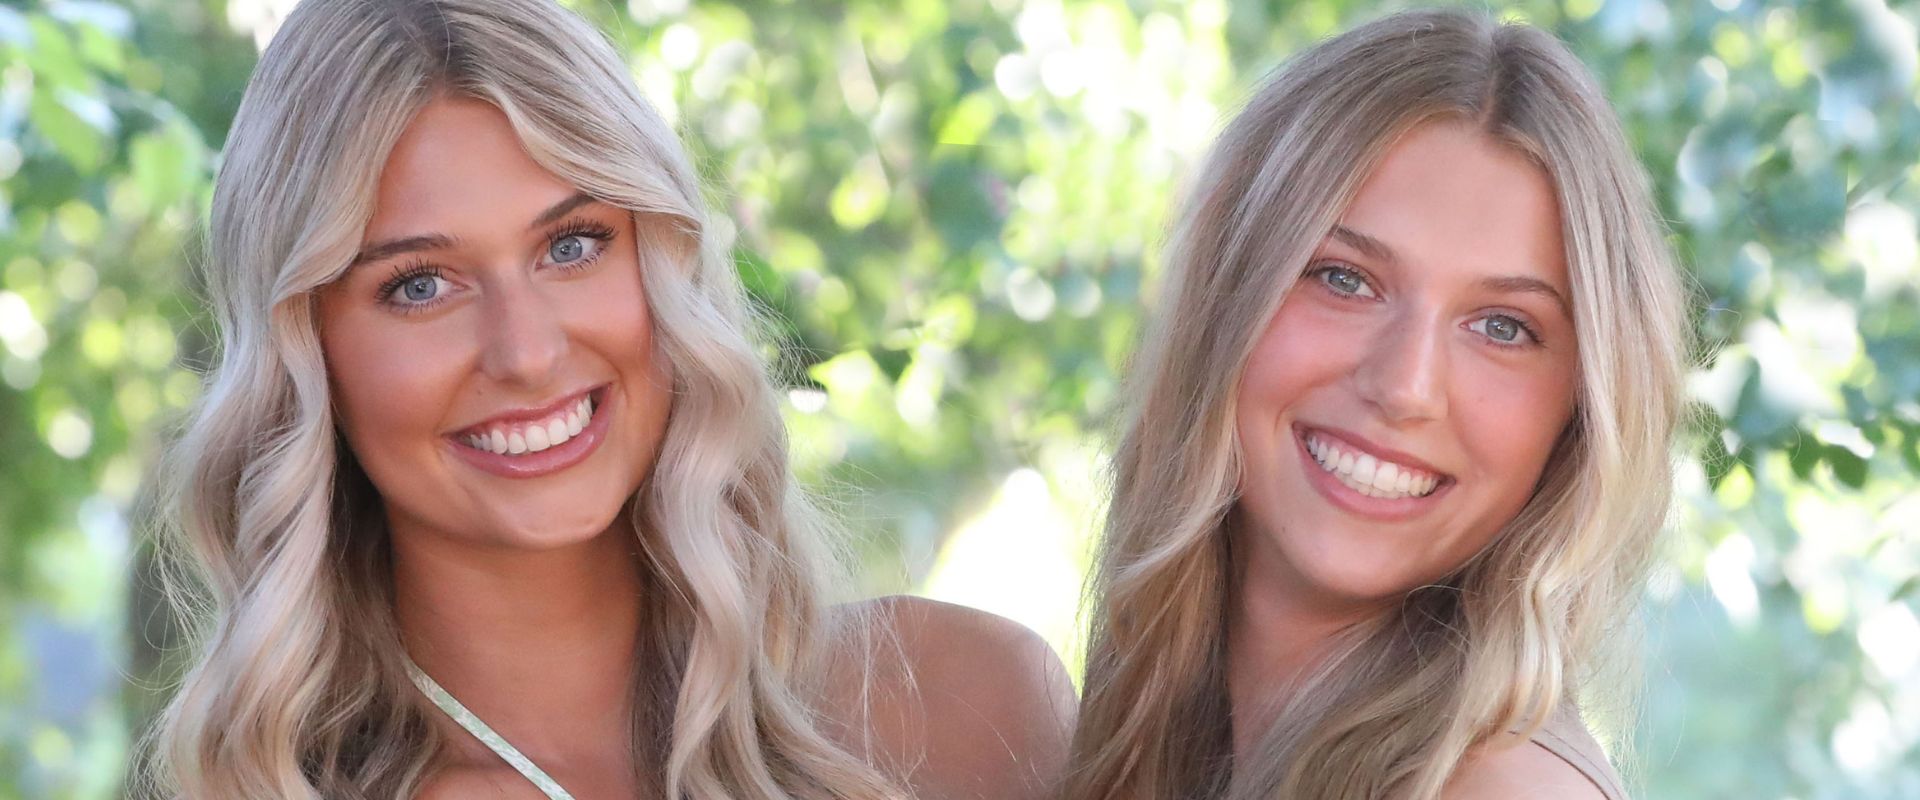 adult sisters smile and debate veneers vs invisalign